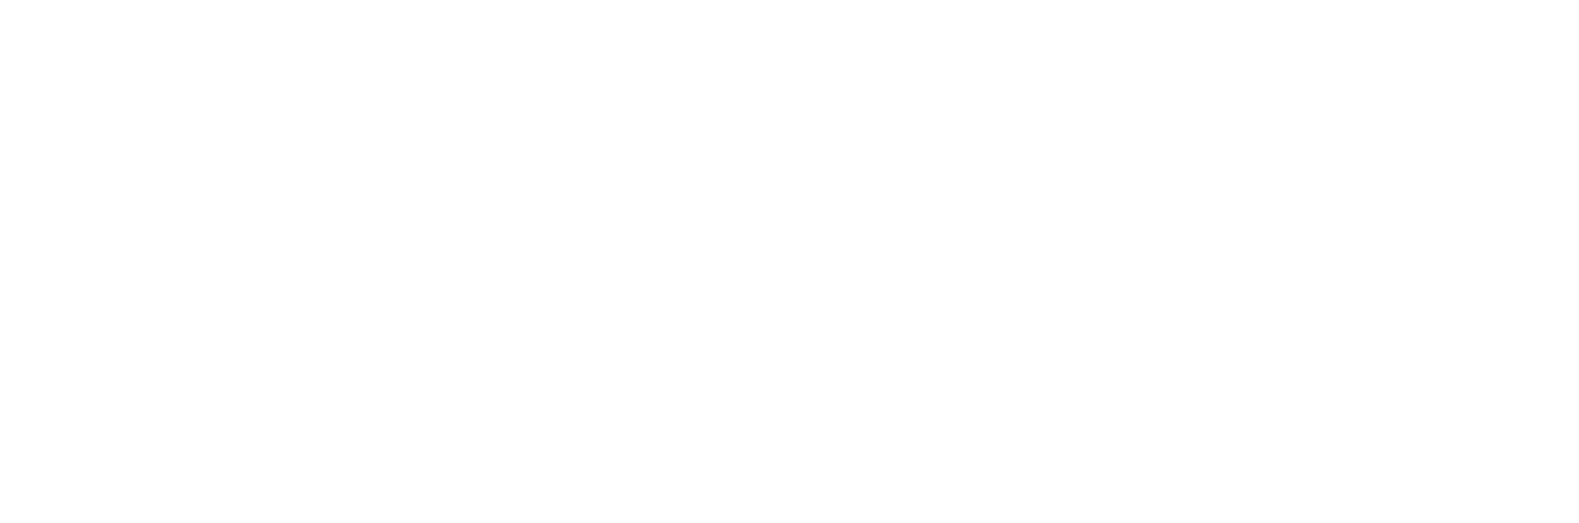 05. Atani logo horizontal white